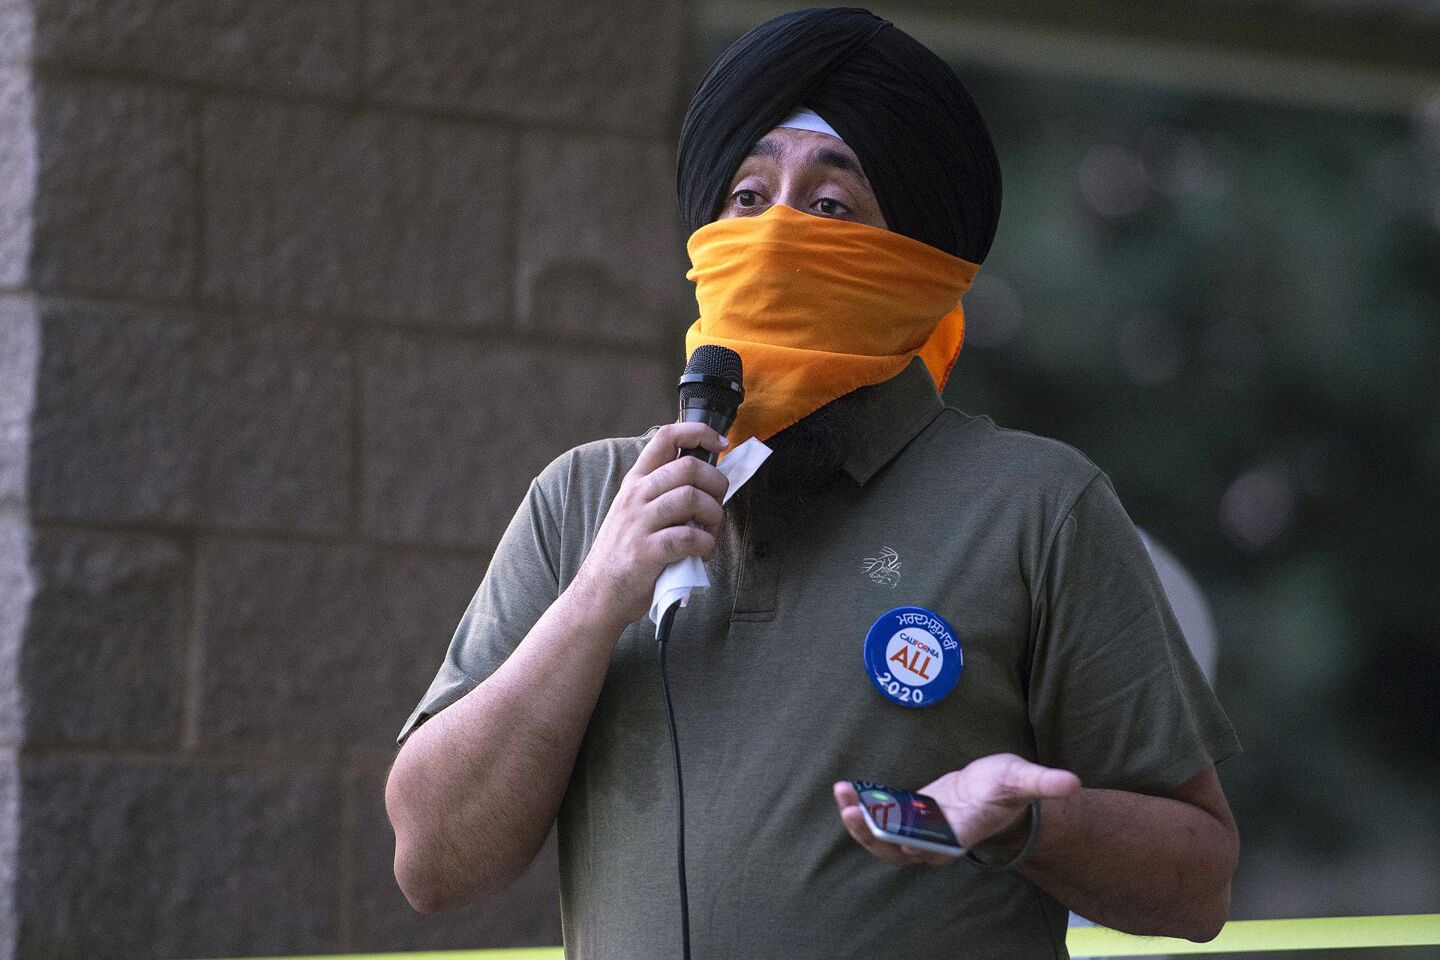 Deep Singh speaks during the vigil.